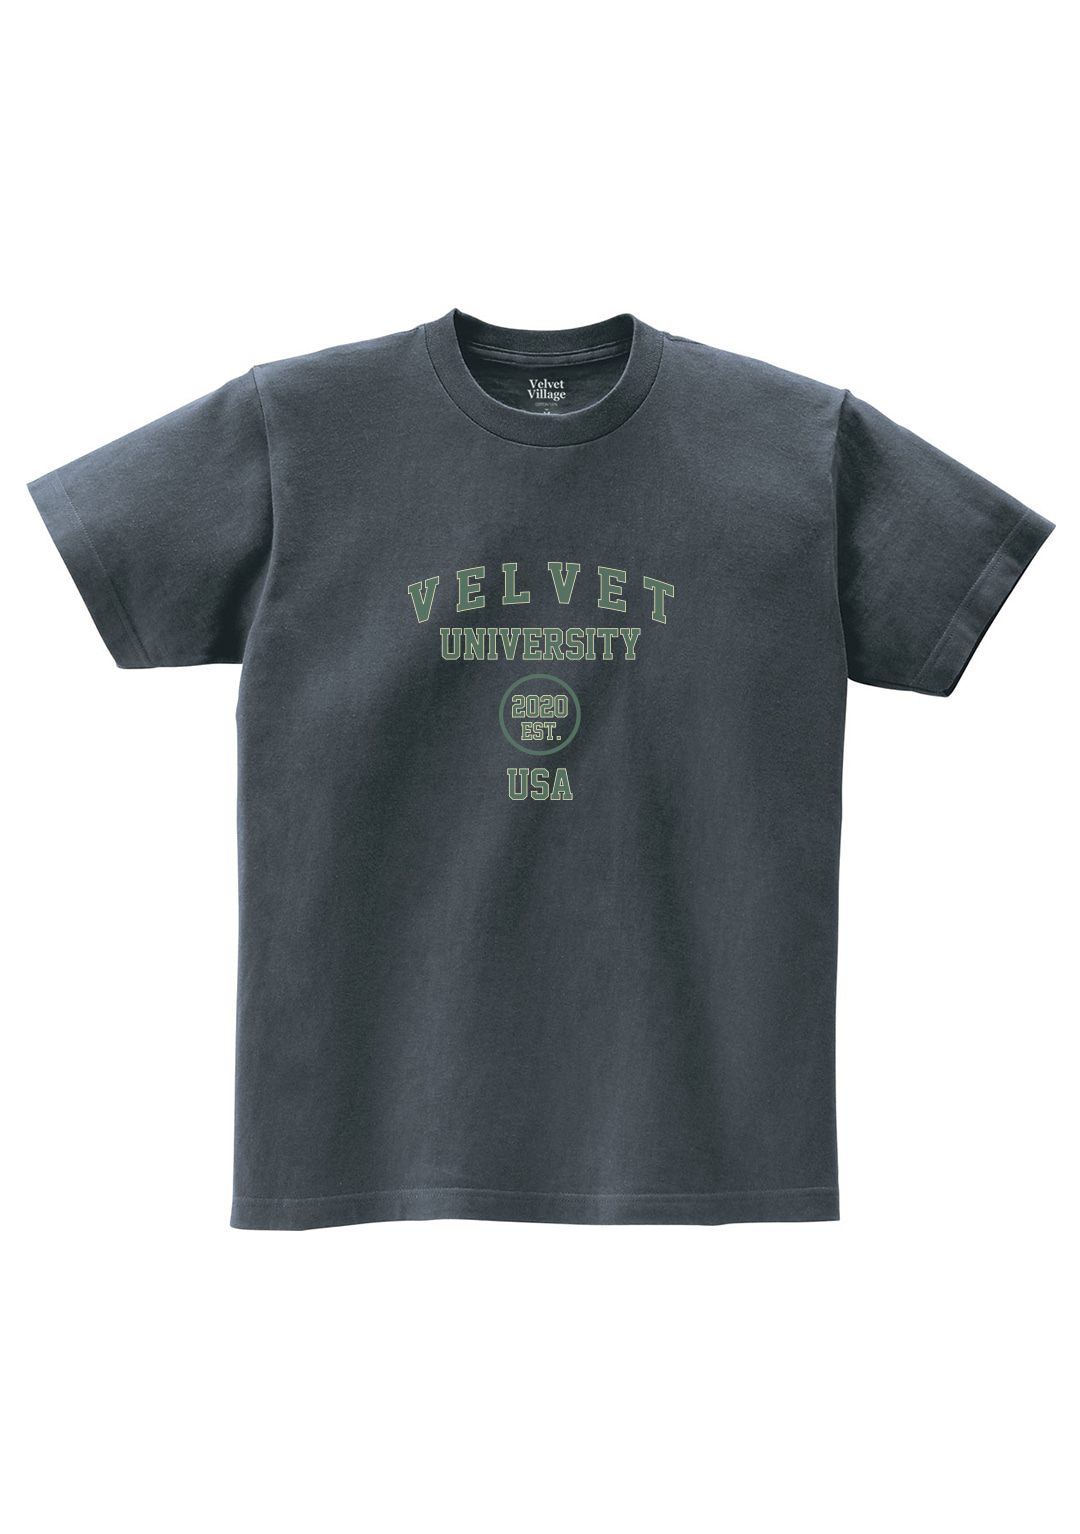 Velvet University T-shirt (Charcoal)